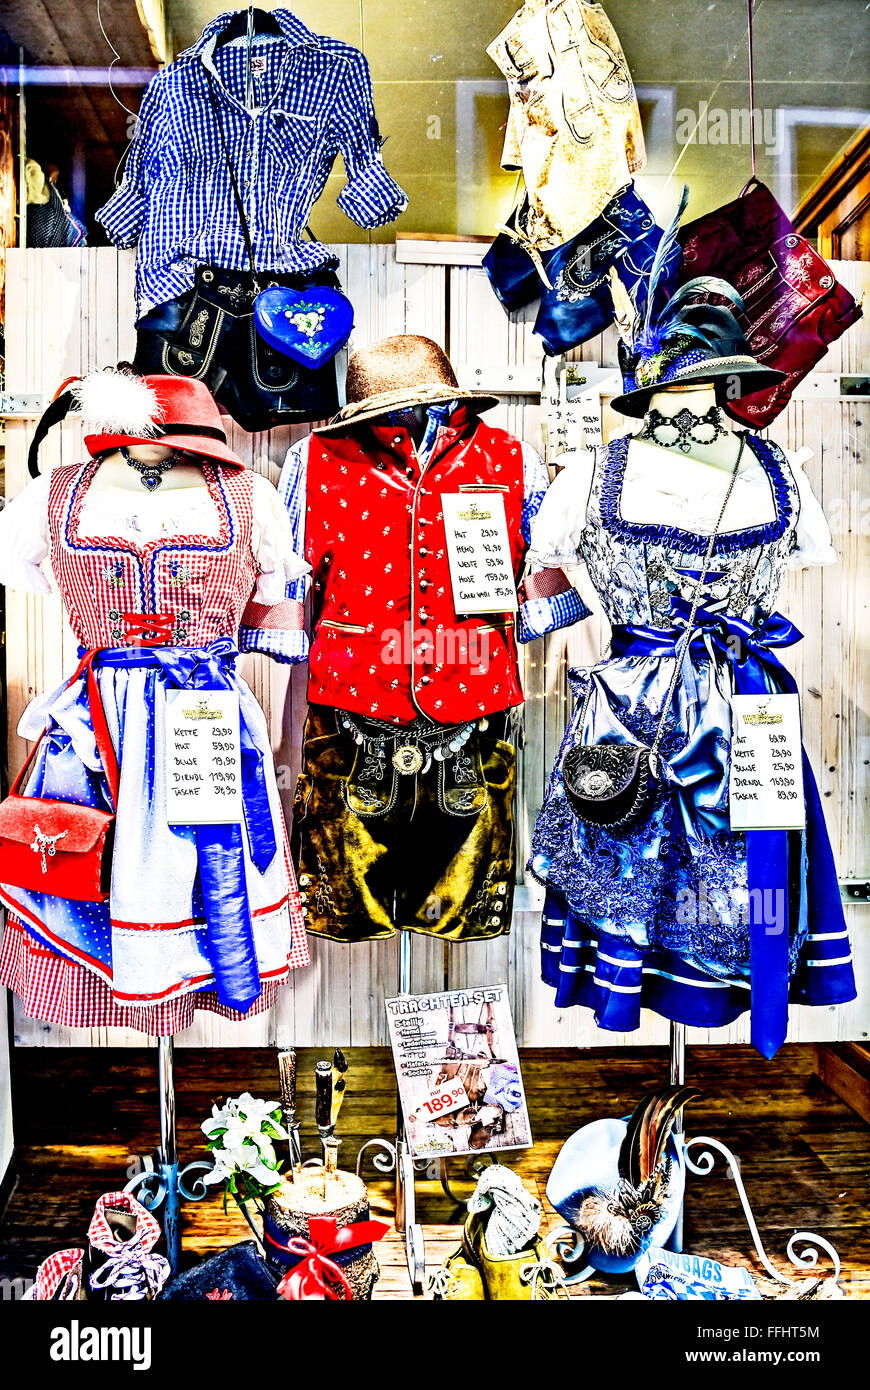 Vêtements bavarois sur l'affichage, la Bayerische tracht im Schaufenster Banque D'Images